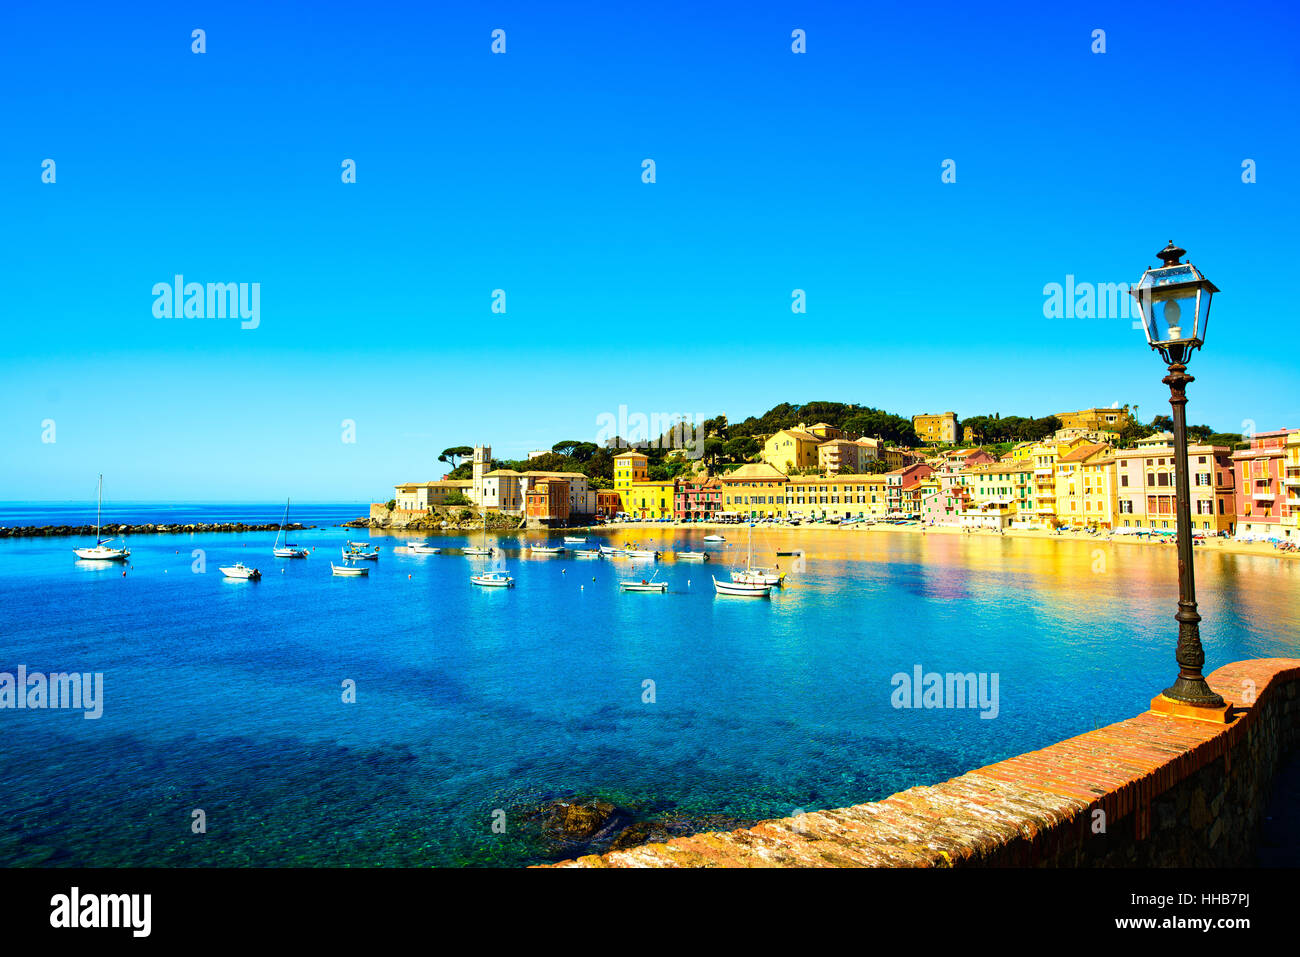 Sestri Levante stille Bucht oder Baia del Silenzio Meer Hafen, Straßenlaterne und Strand Blick auf morgen. Ligurien, Italien. Stockfoto